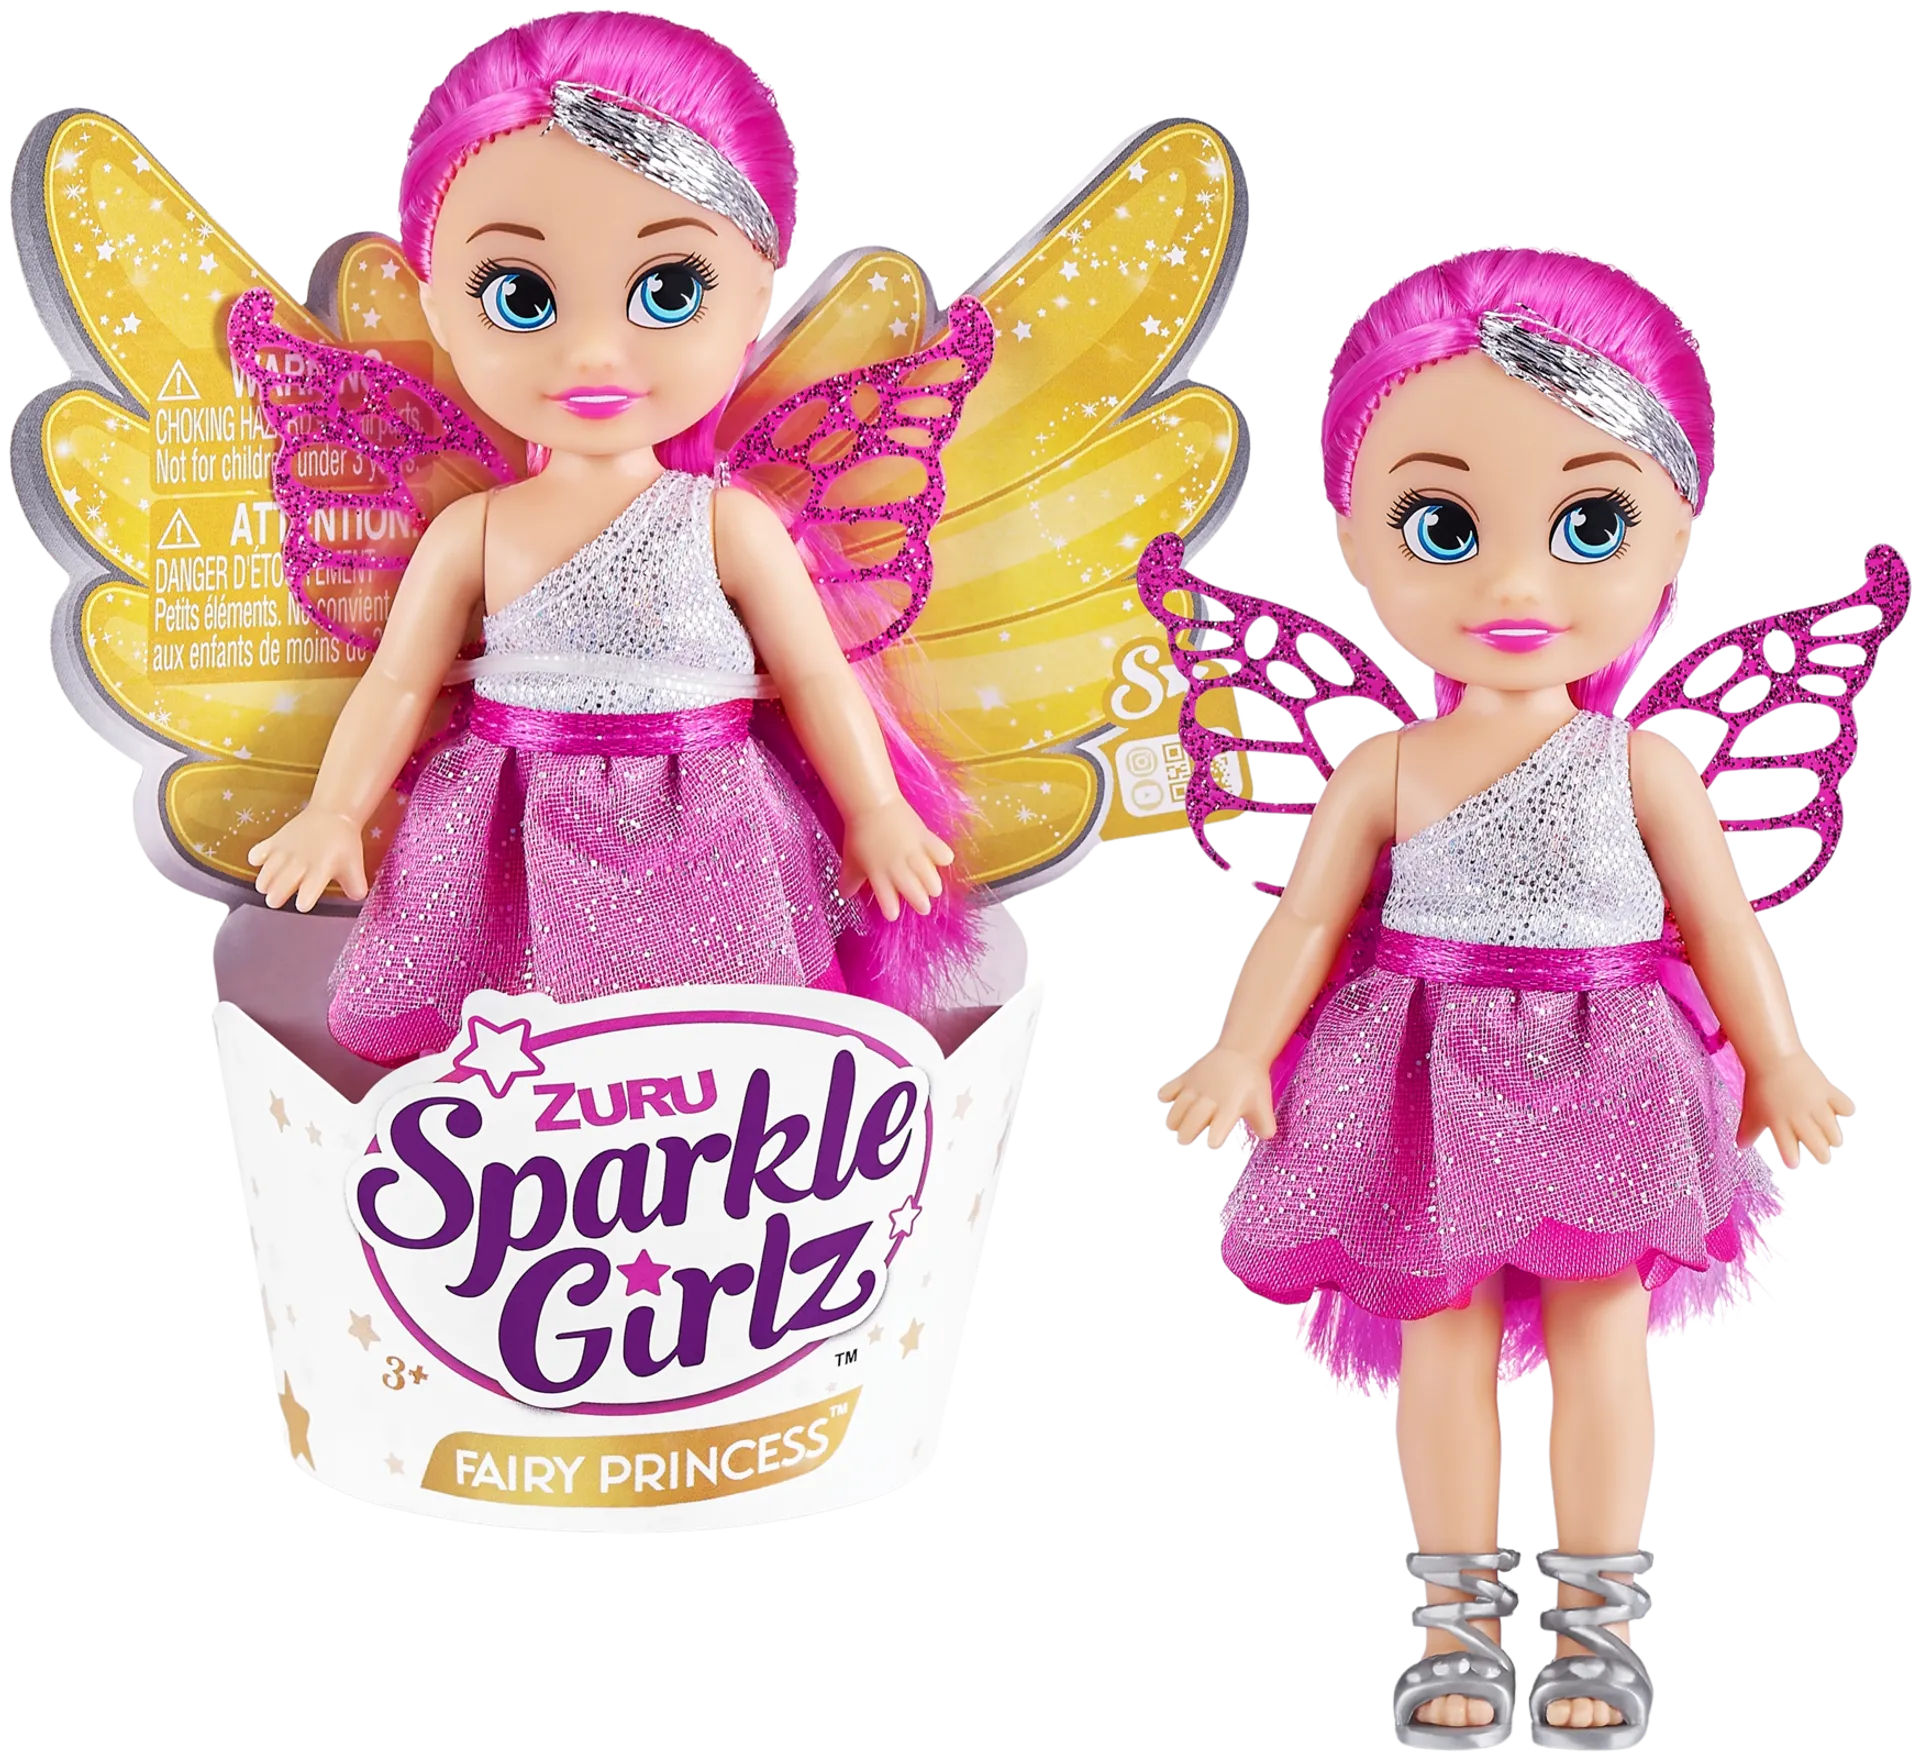 Fairy princess cupcake doll - 5